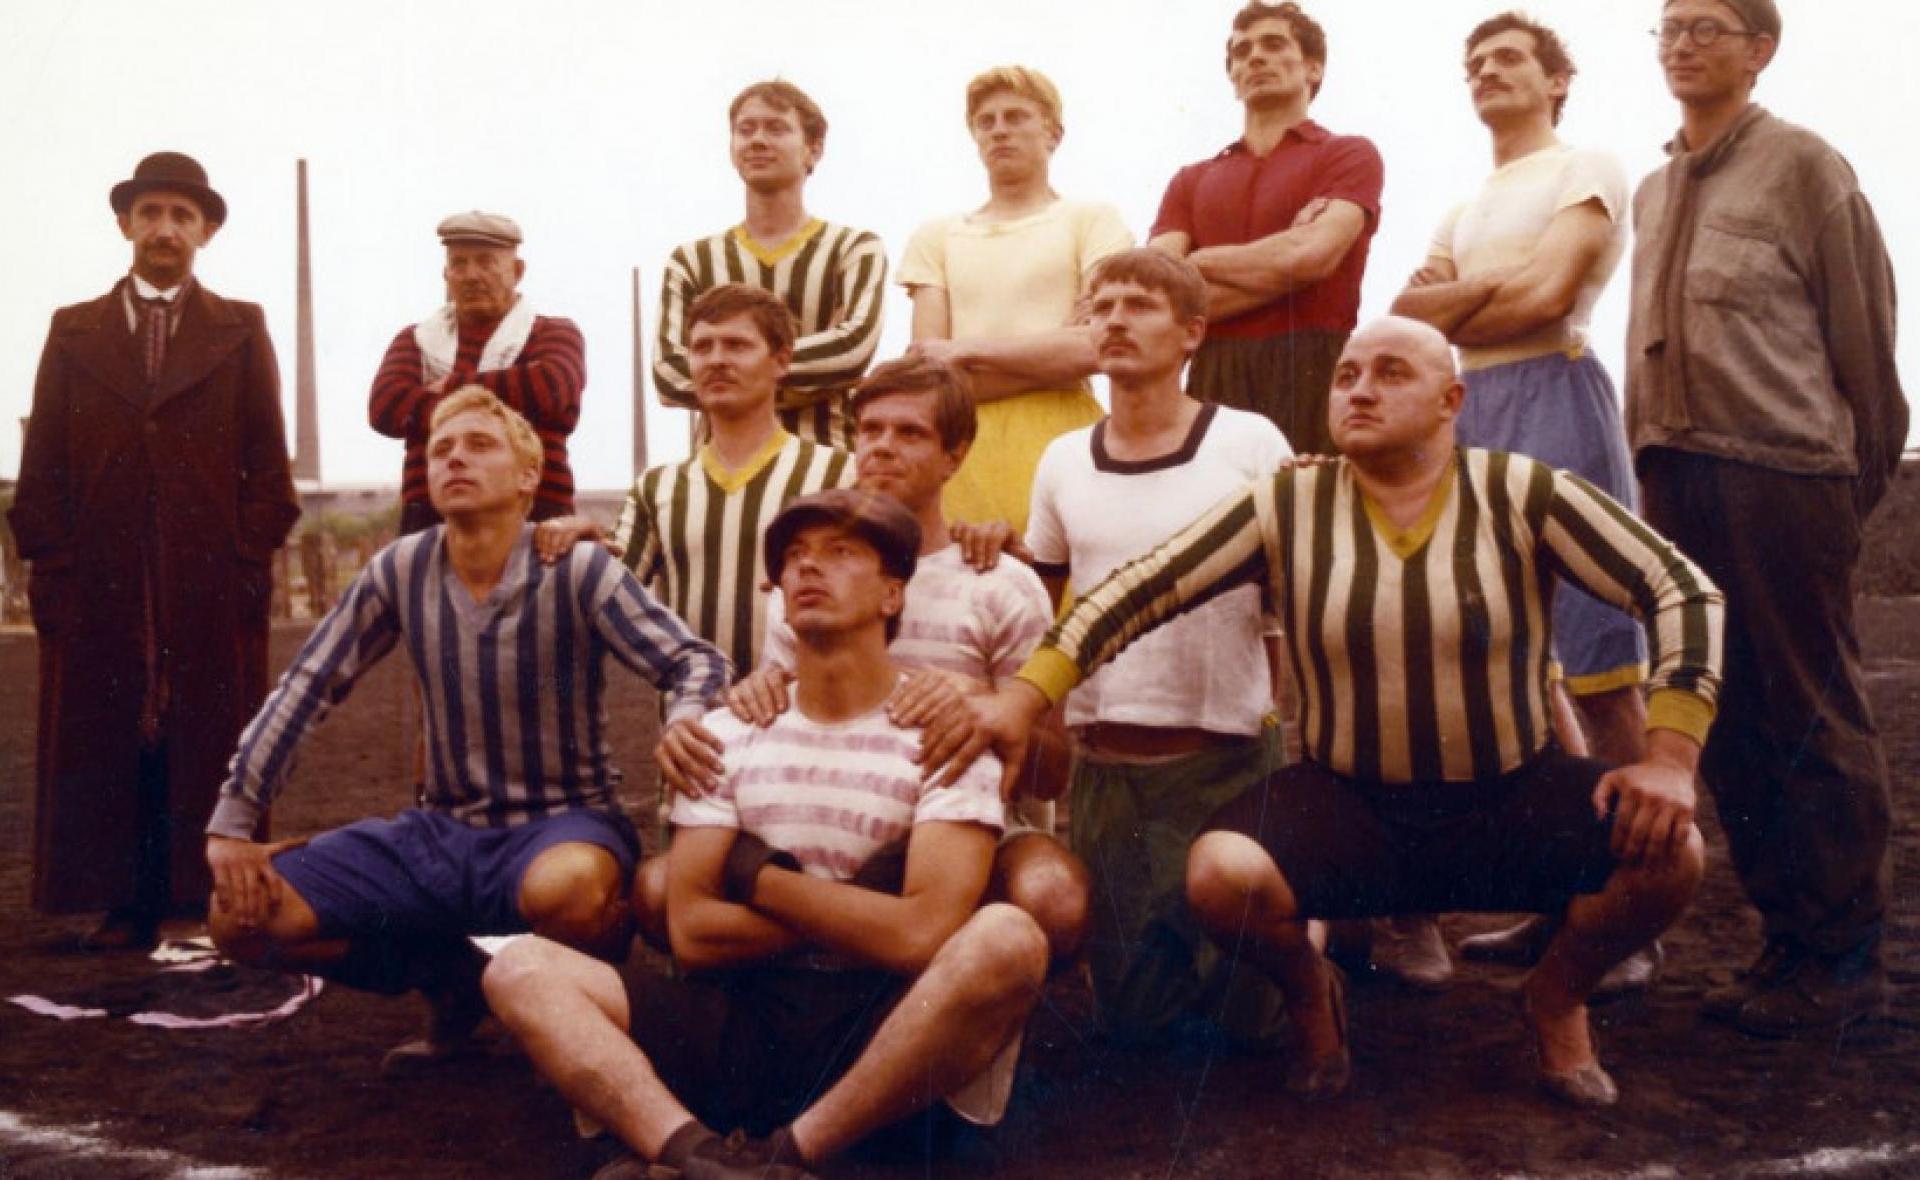 Cette belle époque du foot / Régi Idők focija de Sándor Pál (Fiction, Hongrie, 1973, 84’, VOSTF)